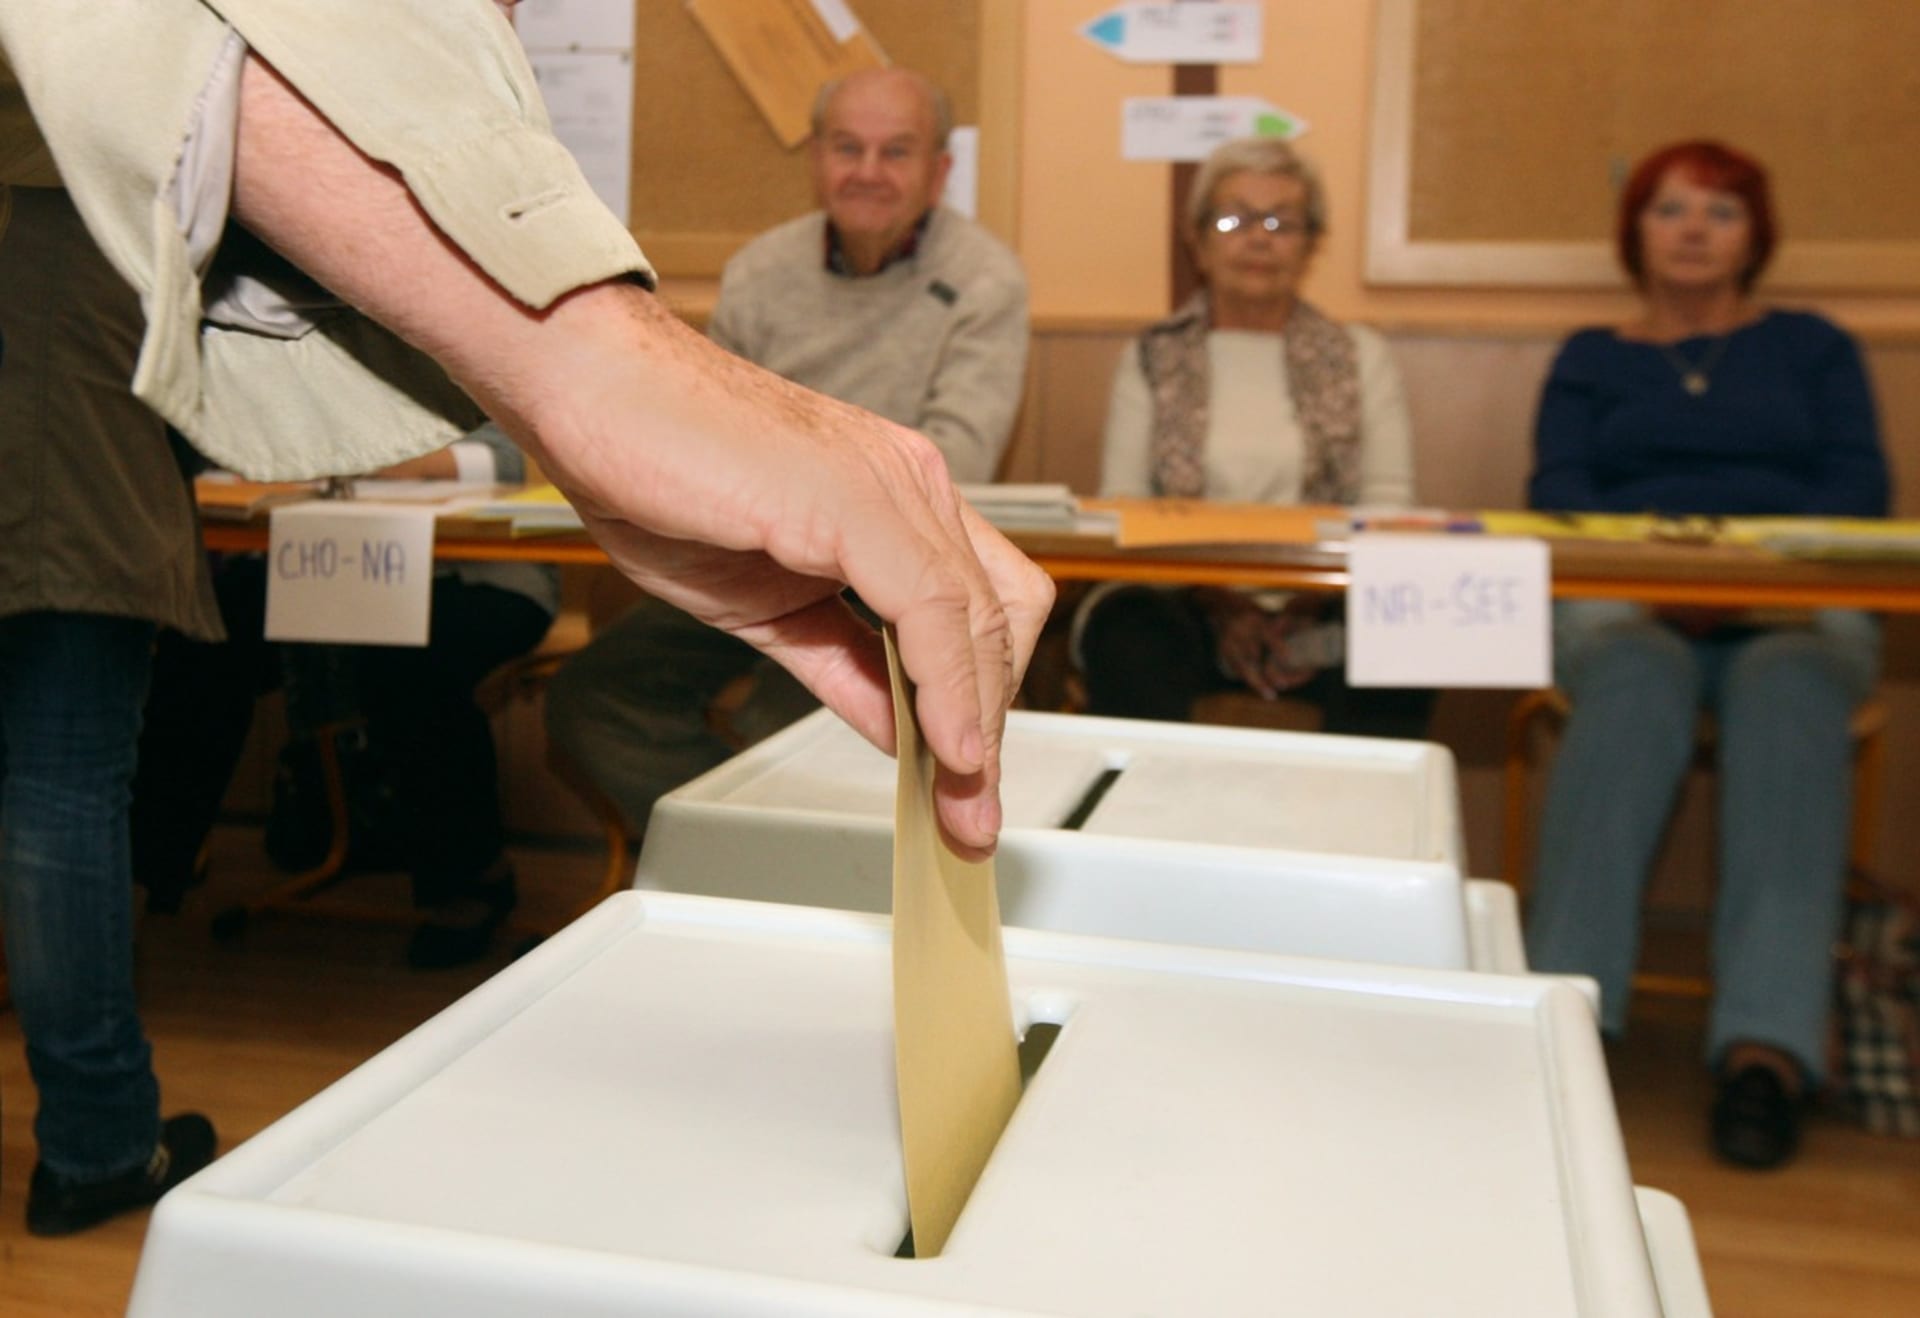 Volby do Poslanecké sněmovny proběhnou 8. a 9. října 2021.